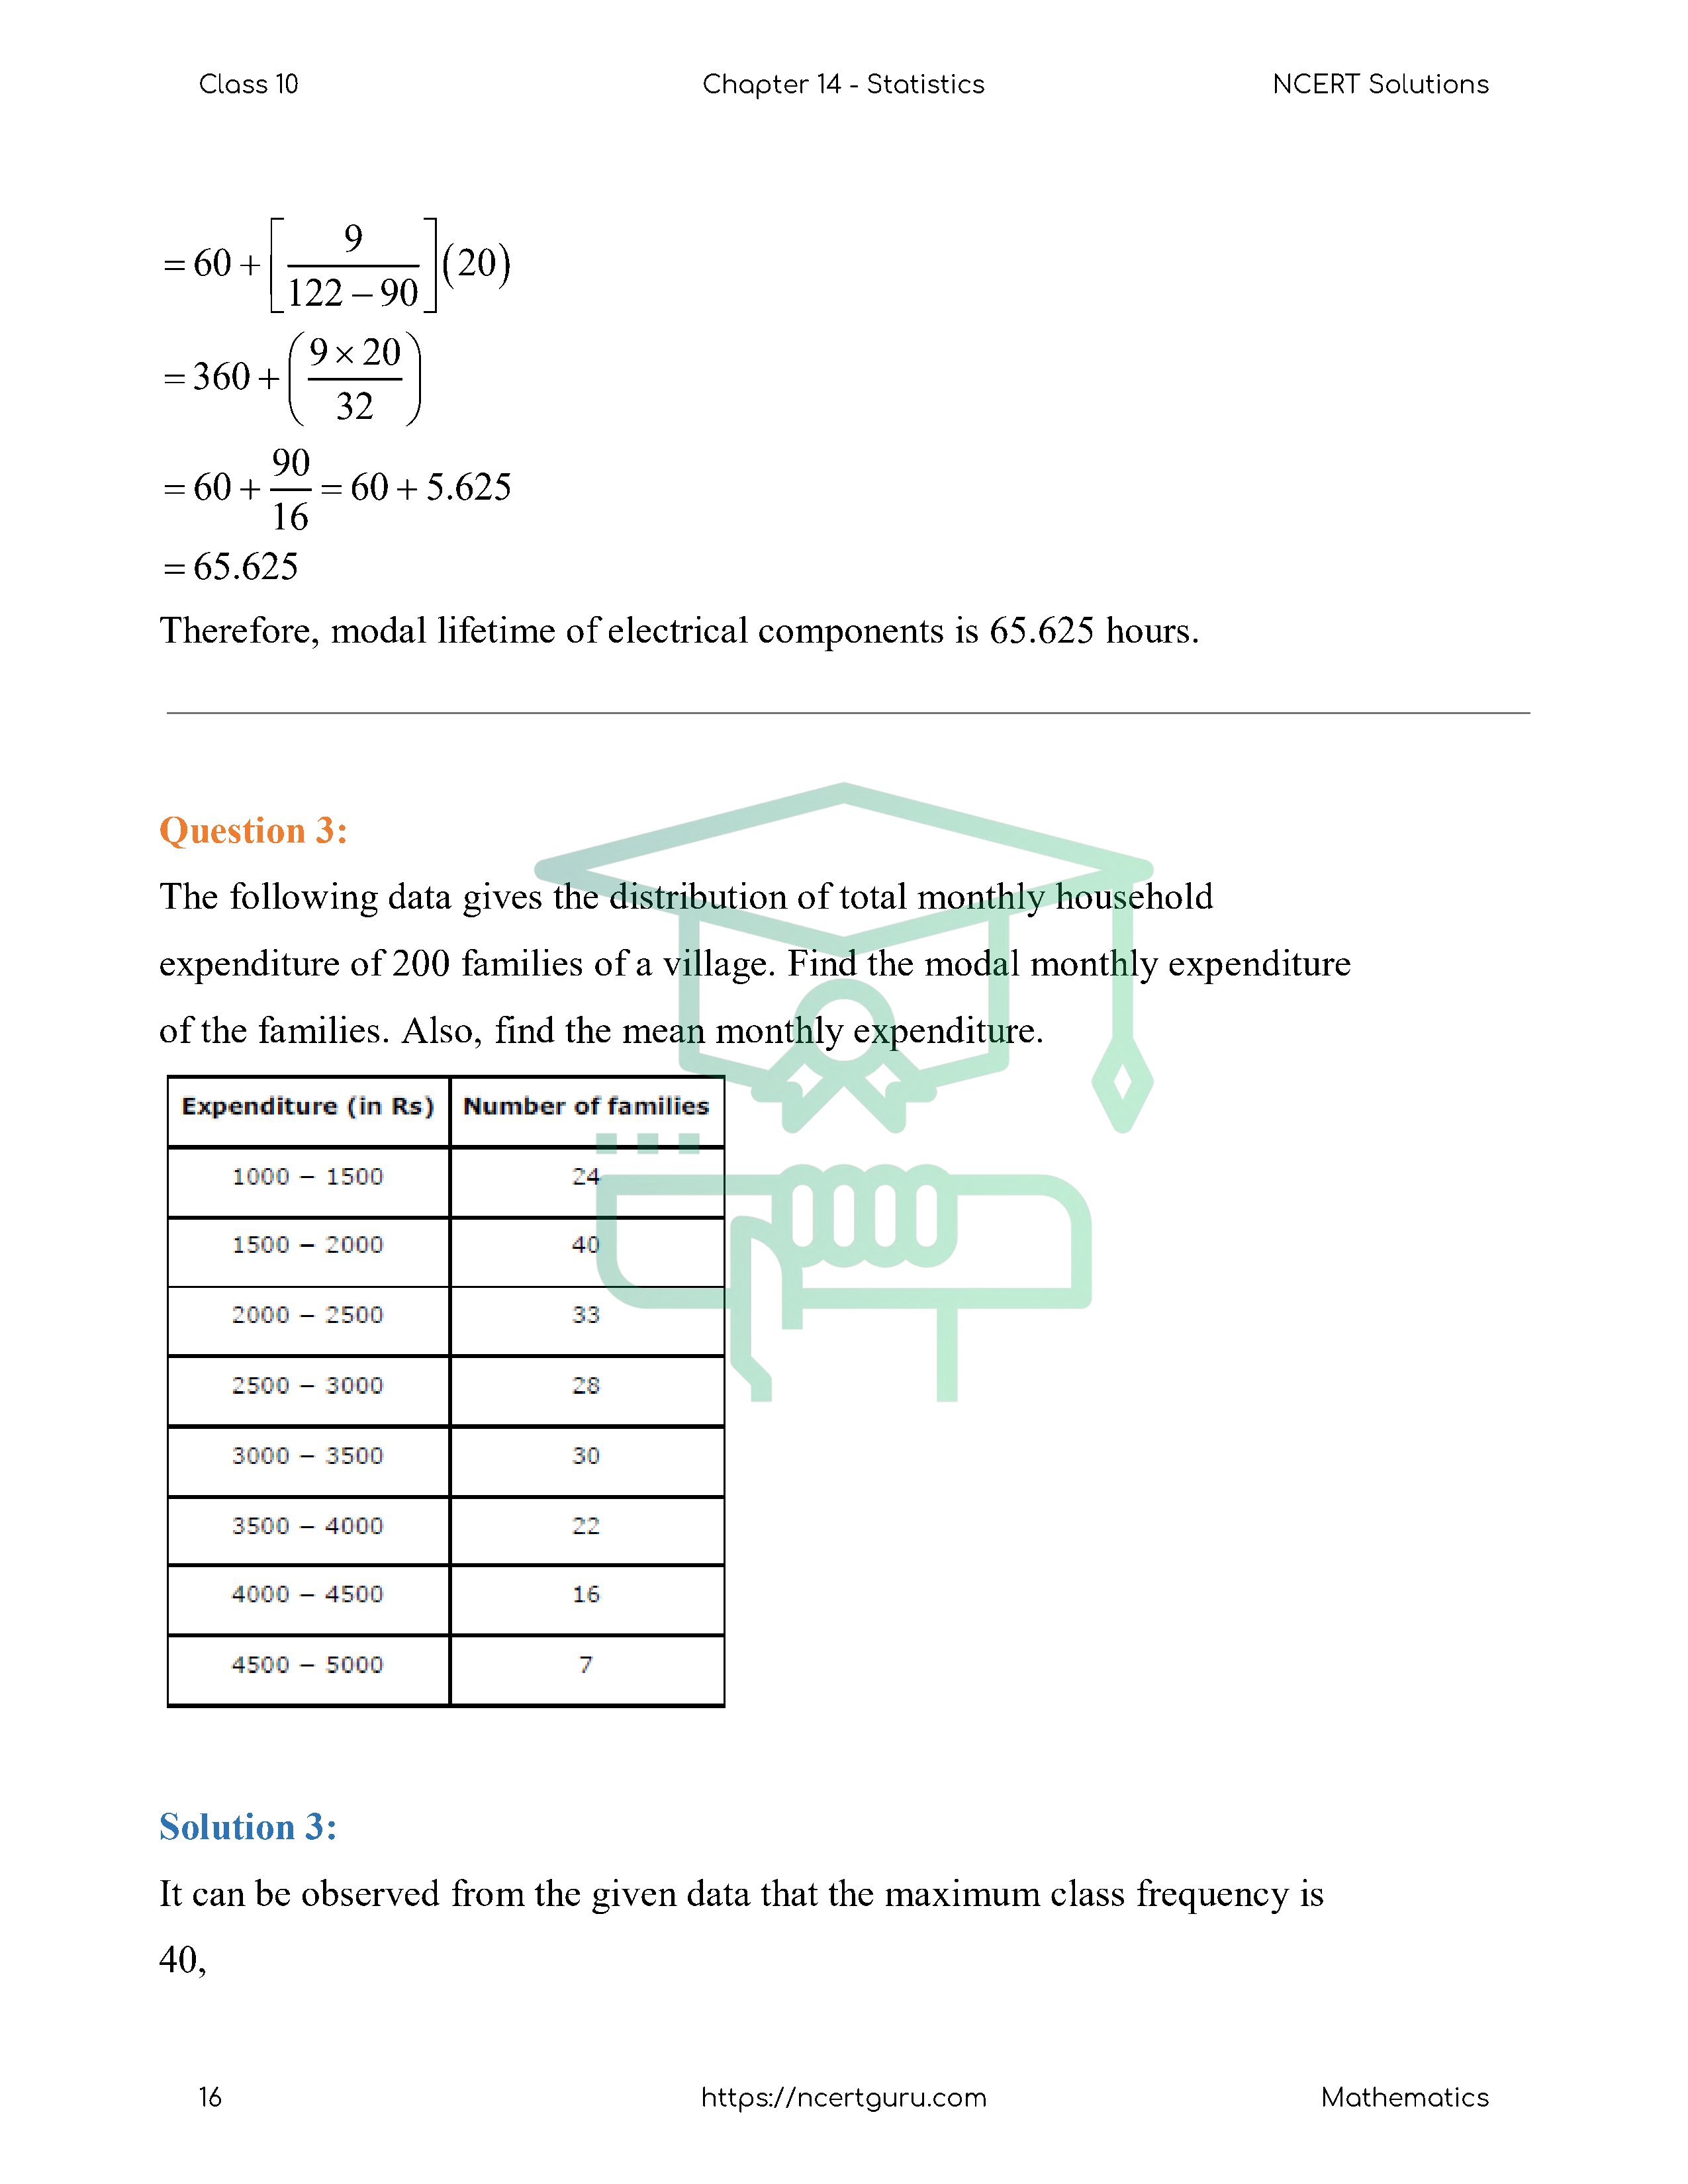 NCERT Solutions for Class 10 Maths Chapter 14